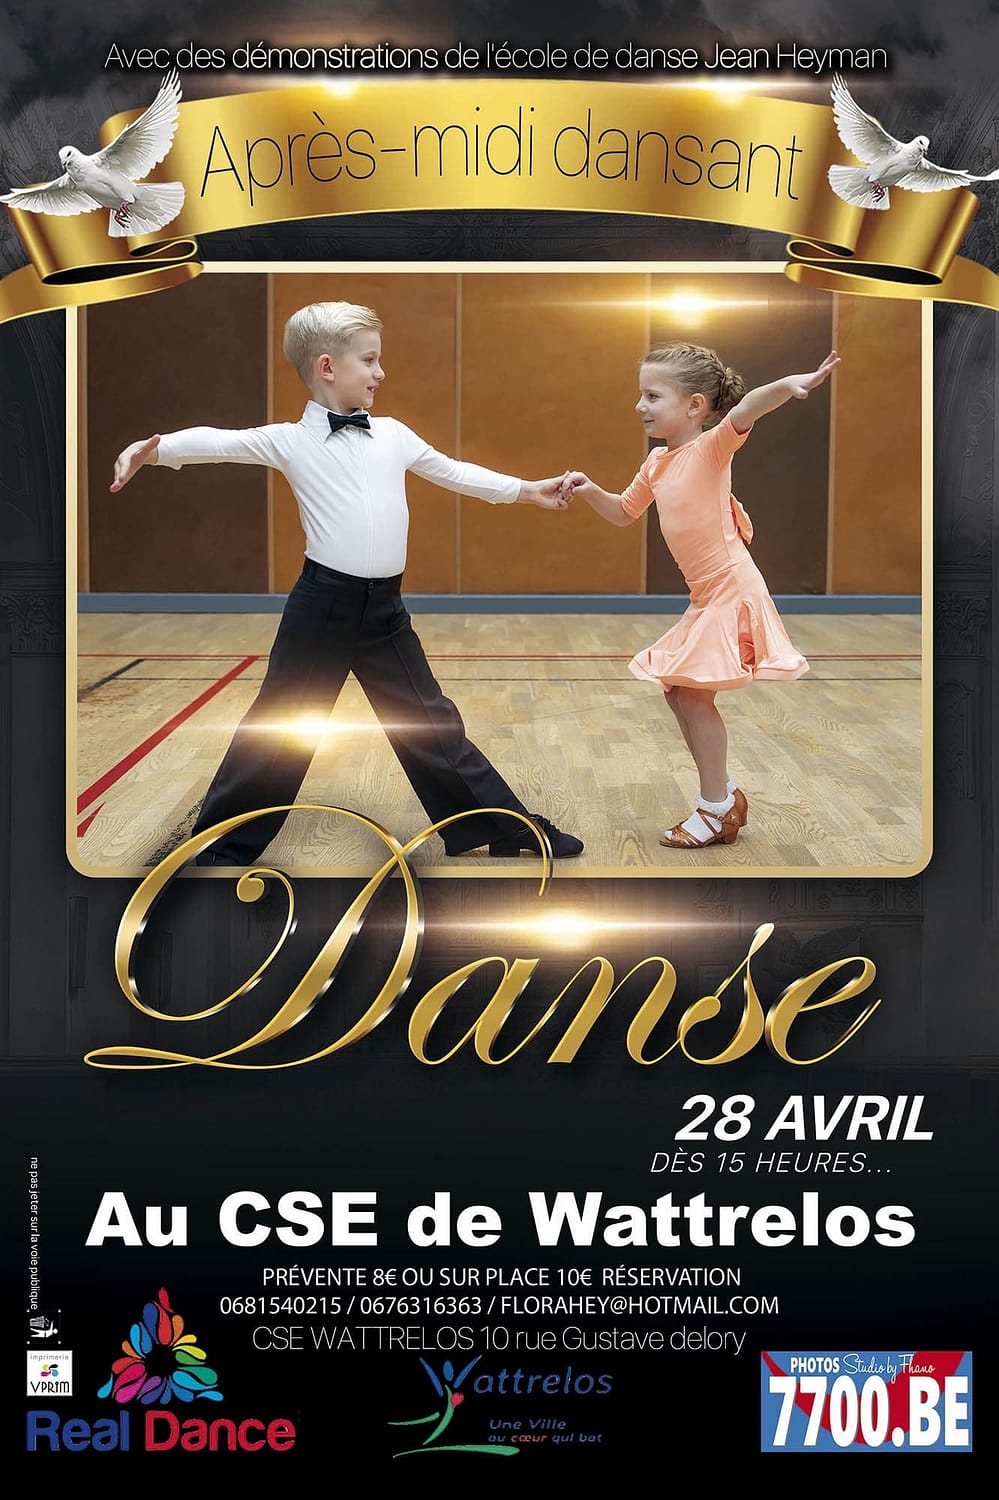 L'évènement de l'après-midi dansant au CSE Wattrelos avec l'école de danse Jean Heyman capturé en images par le Studio 7700.BE